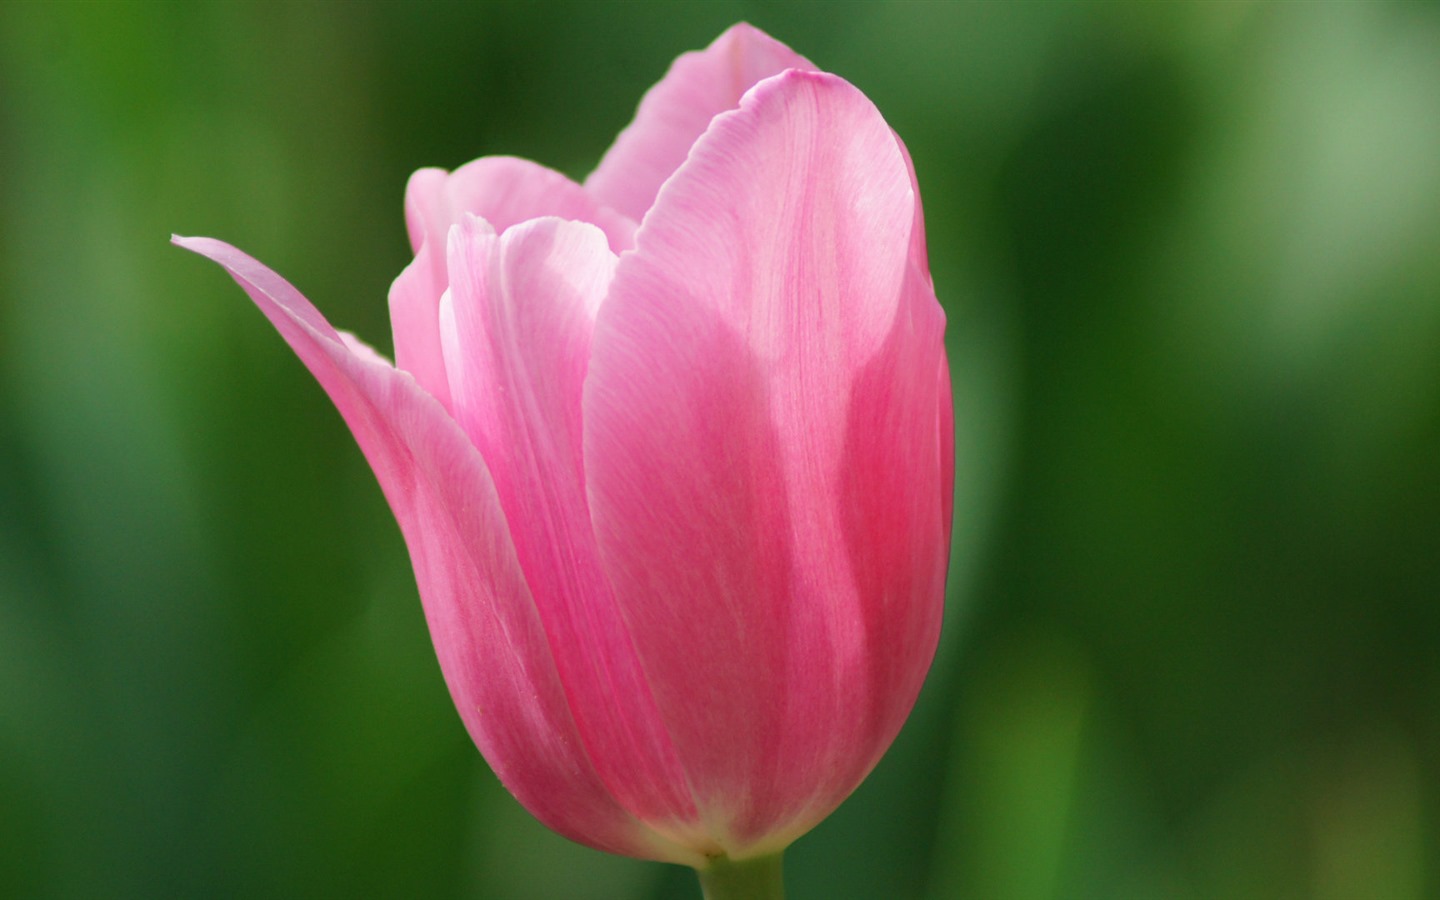 Fondos de pantalla HD de flores tulipanes frescos y coloridos #14 - 1440x900